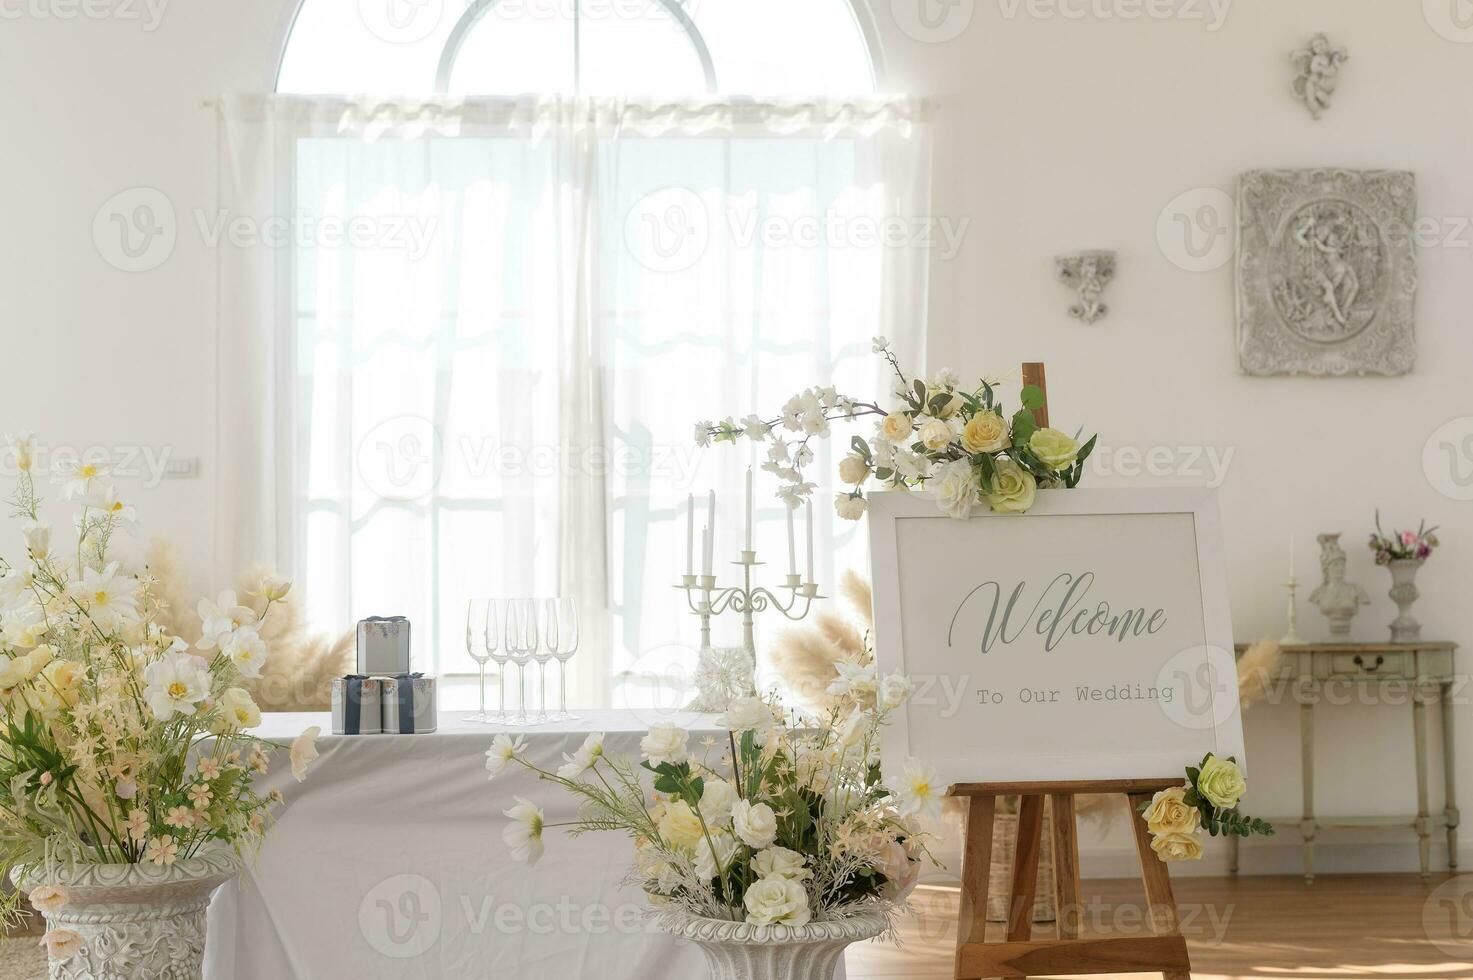 herzlich willkommen zu Hochzeit Zeichen und Rezeption Tabelle dekoriert mit Blumen foto